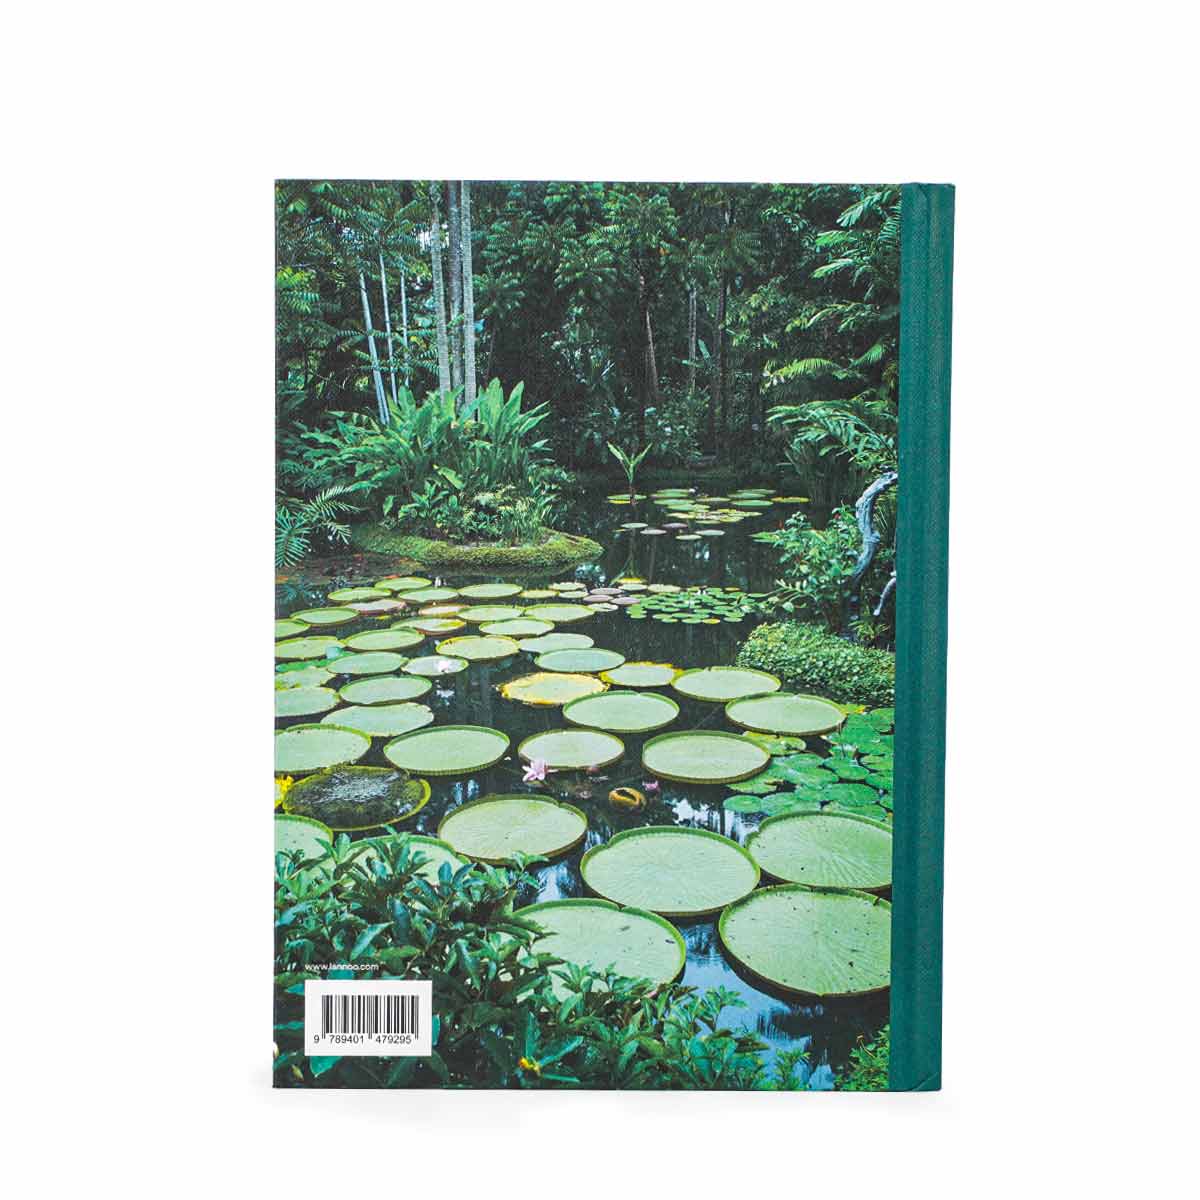 150 Gardens Book